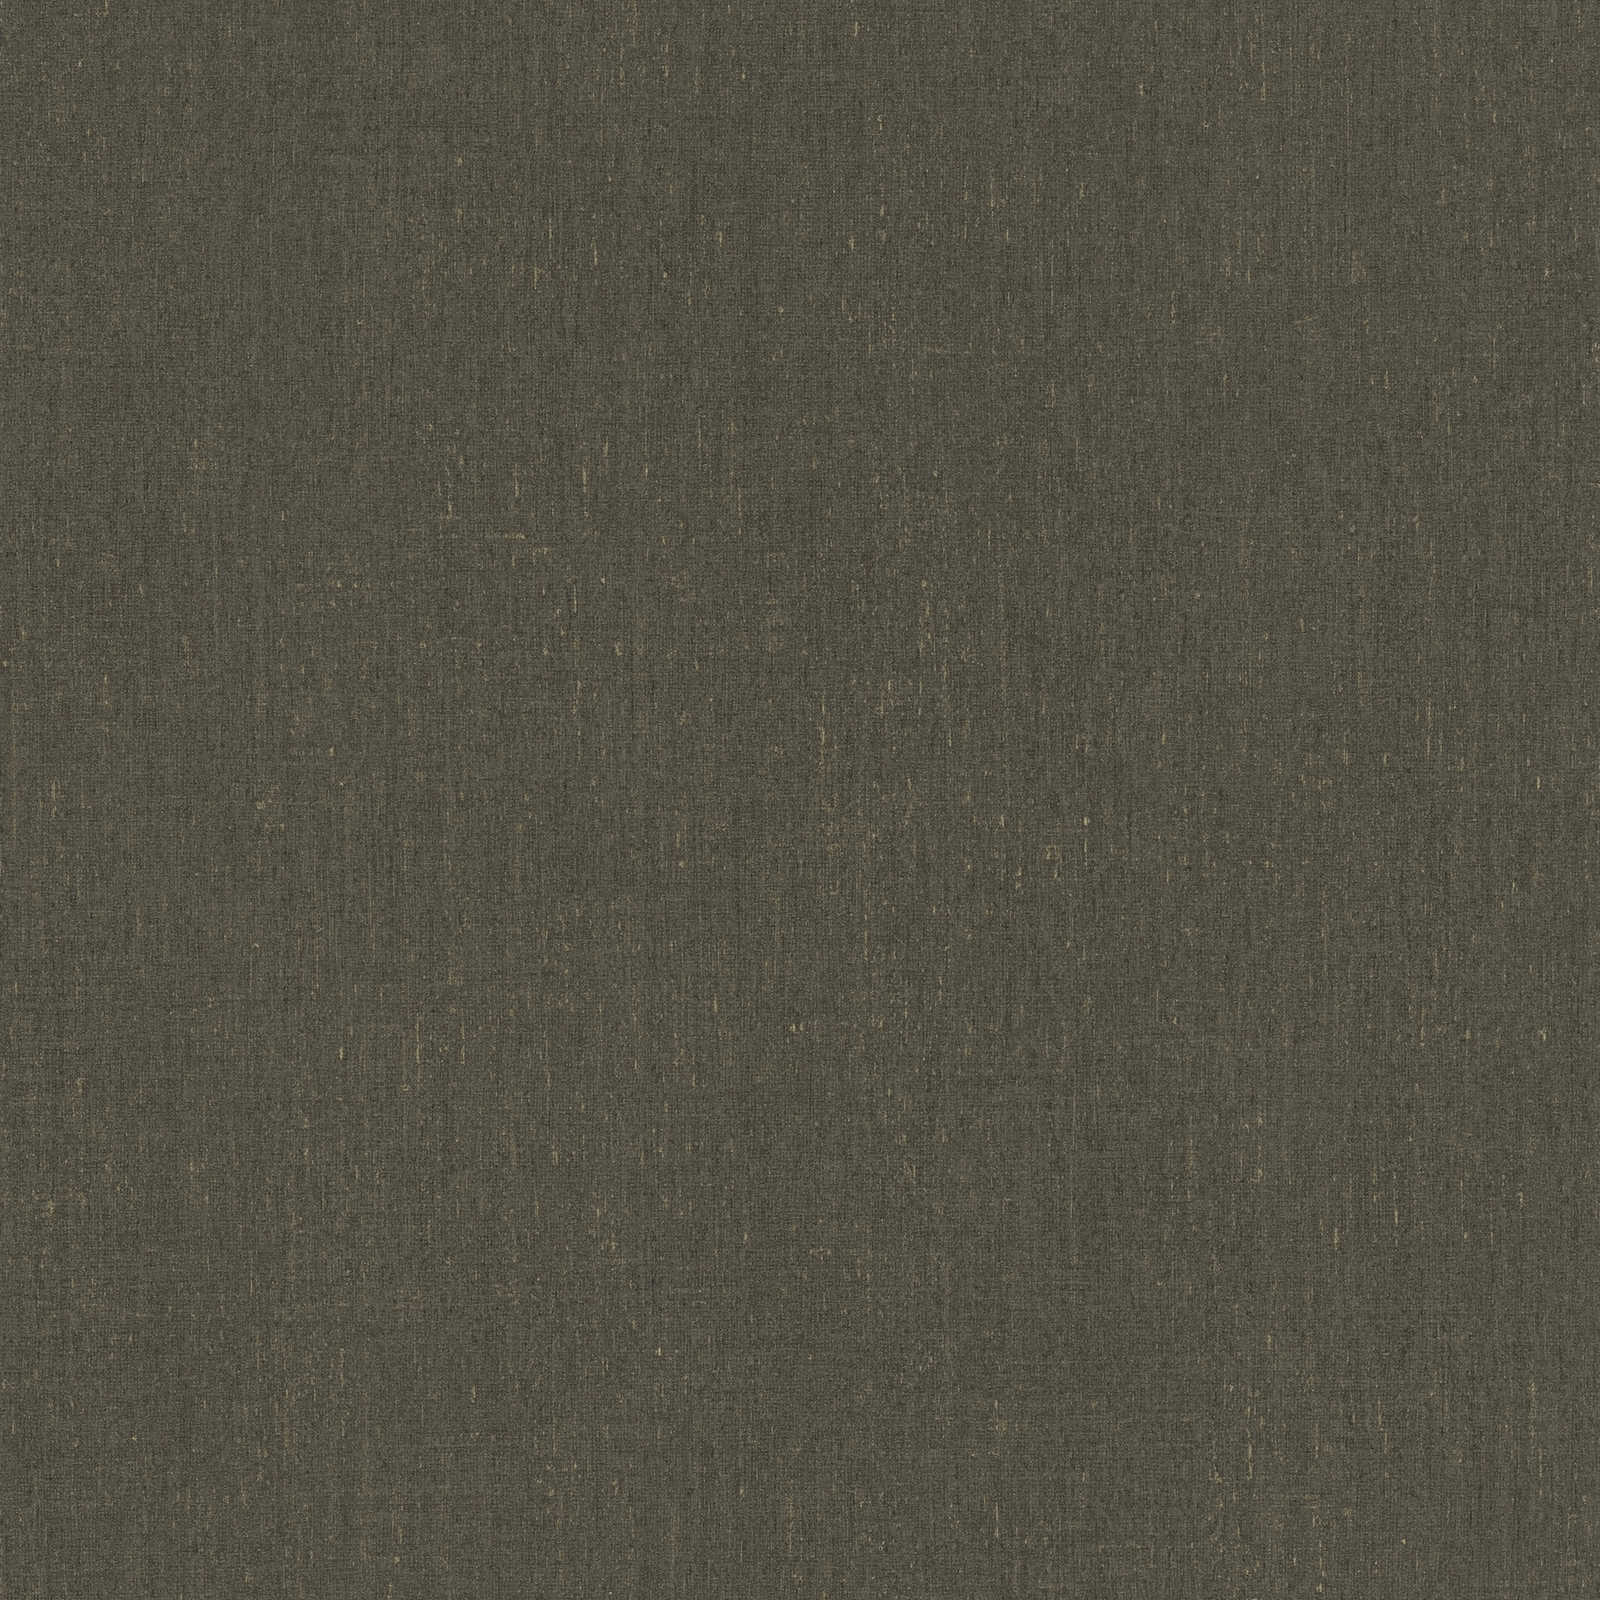         Donkerbruin behang effen met structuurdetail - bruin, grijs
    